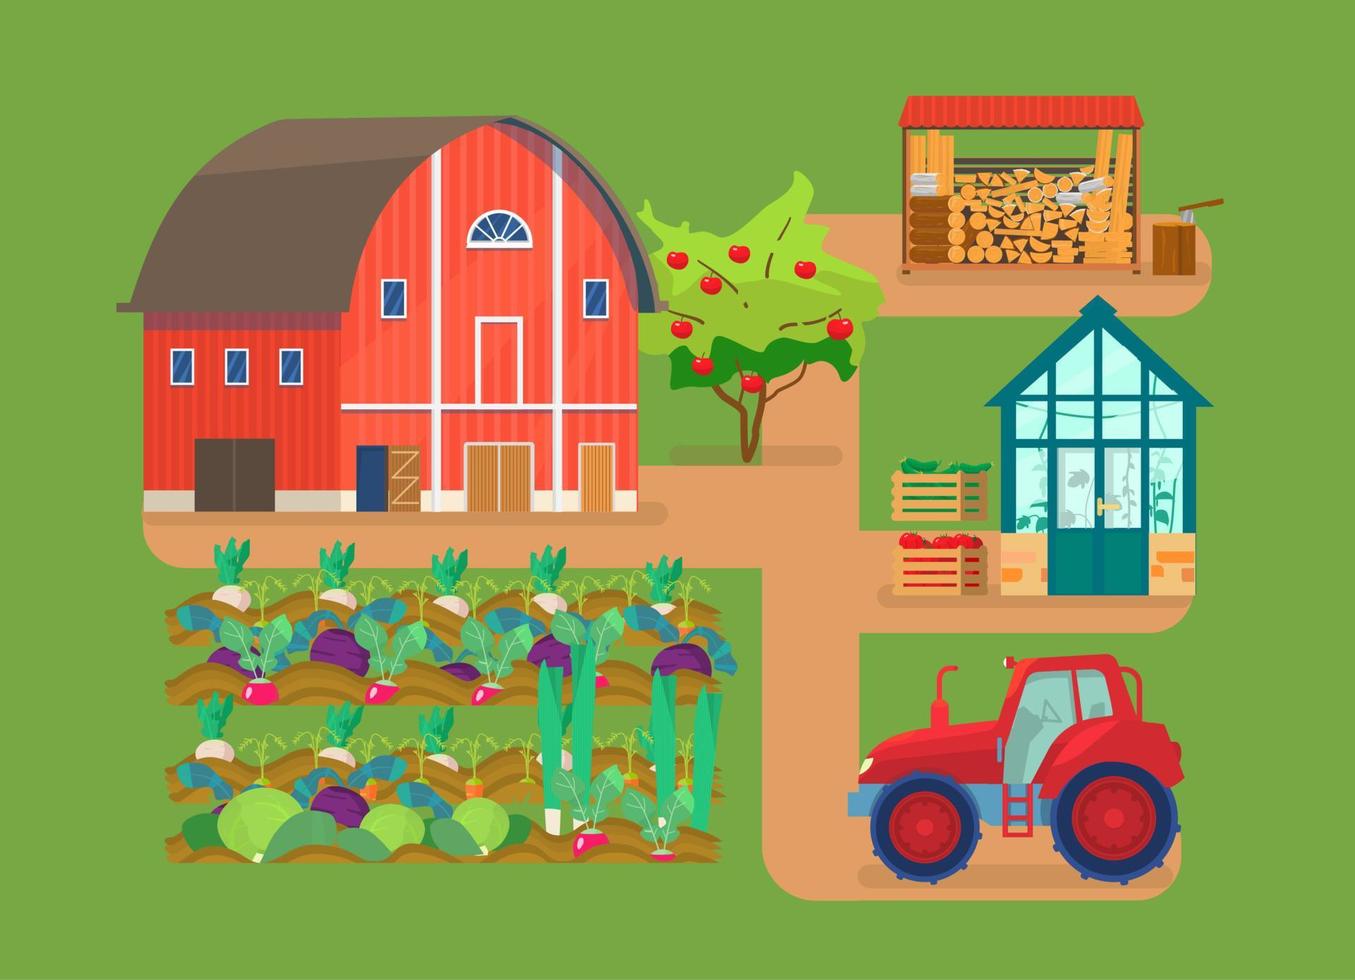 ilustración vectorial de la escena de la granja. granero rojo, lechos de verduras, tractor, casa de cristal con plantas, pila de leña, leña, manzano, cajas con verduras. vector